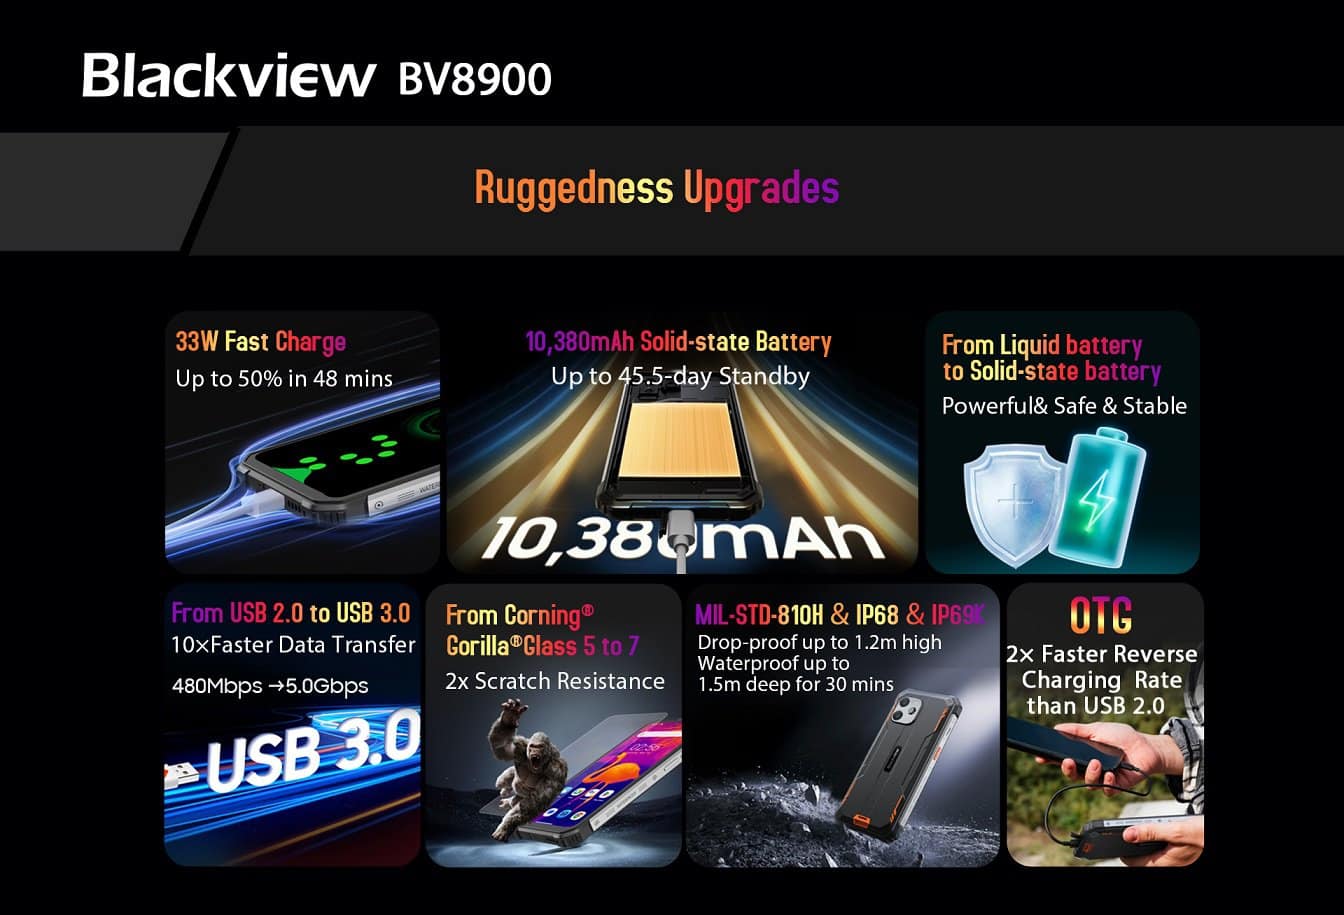 Blackview BV8900 Ruggedness Upgrades